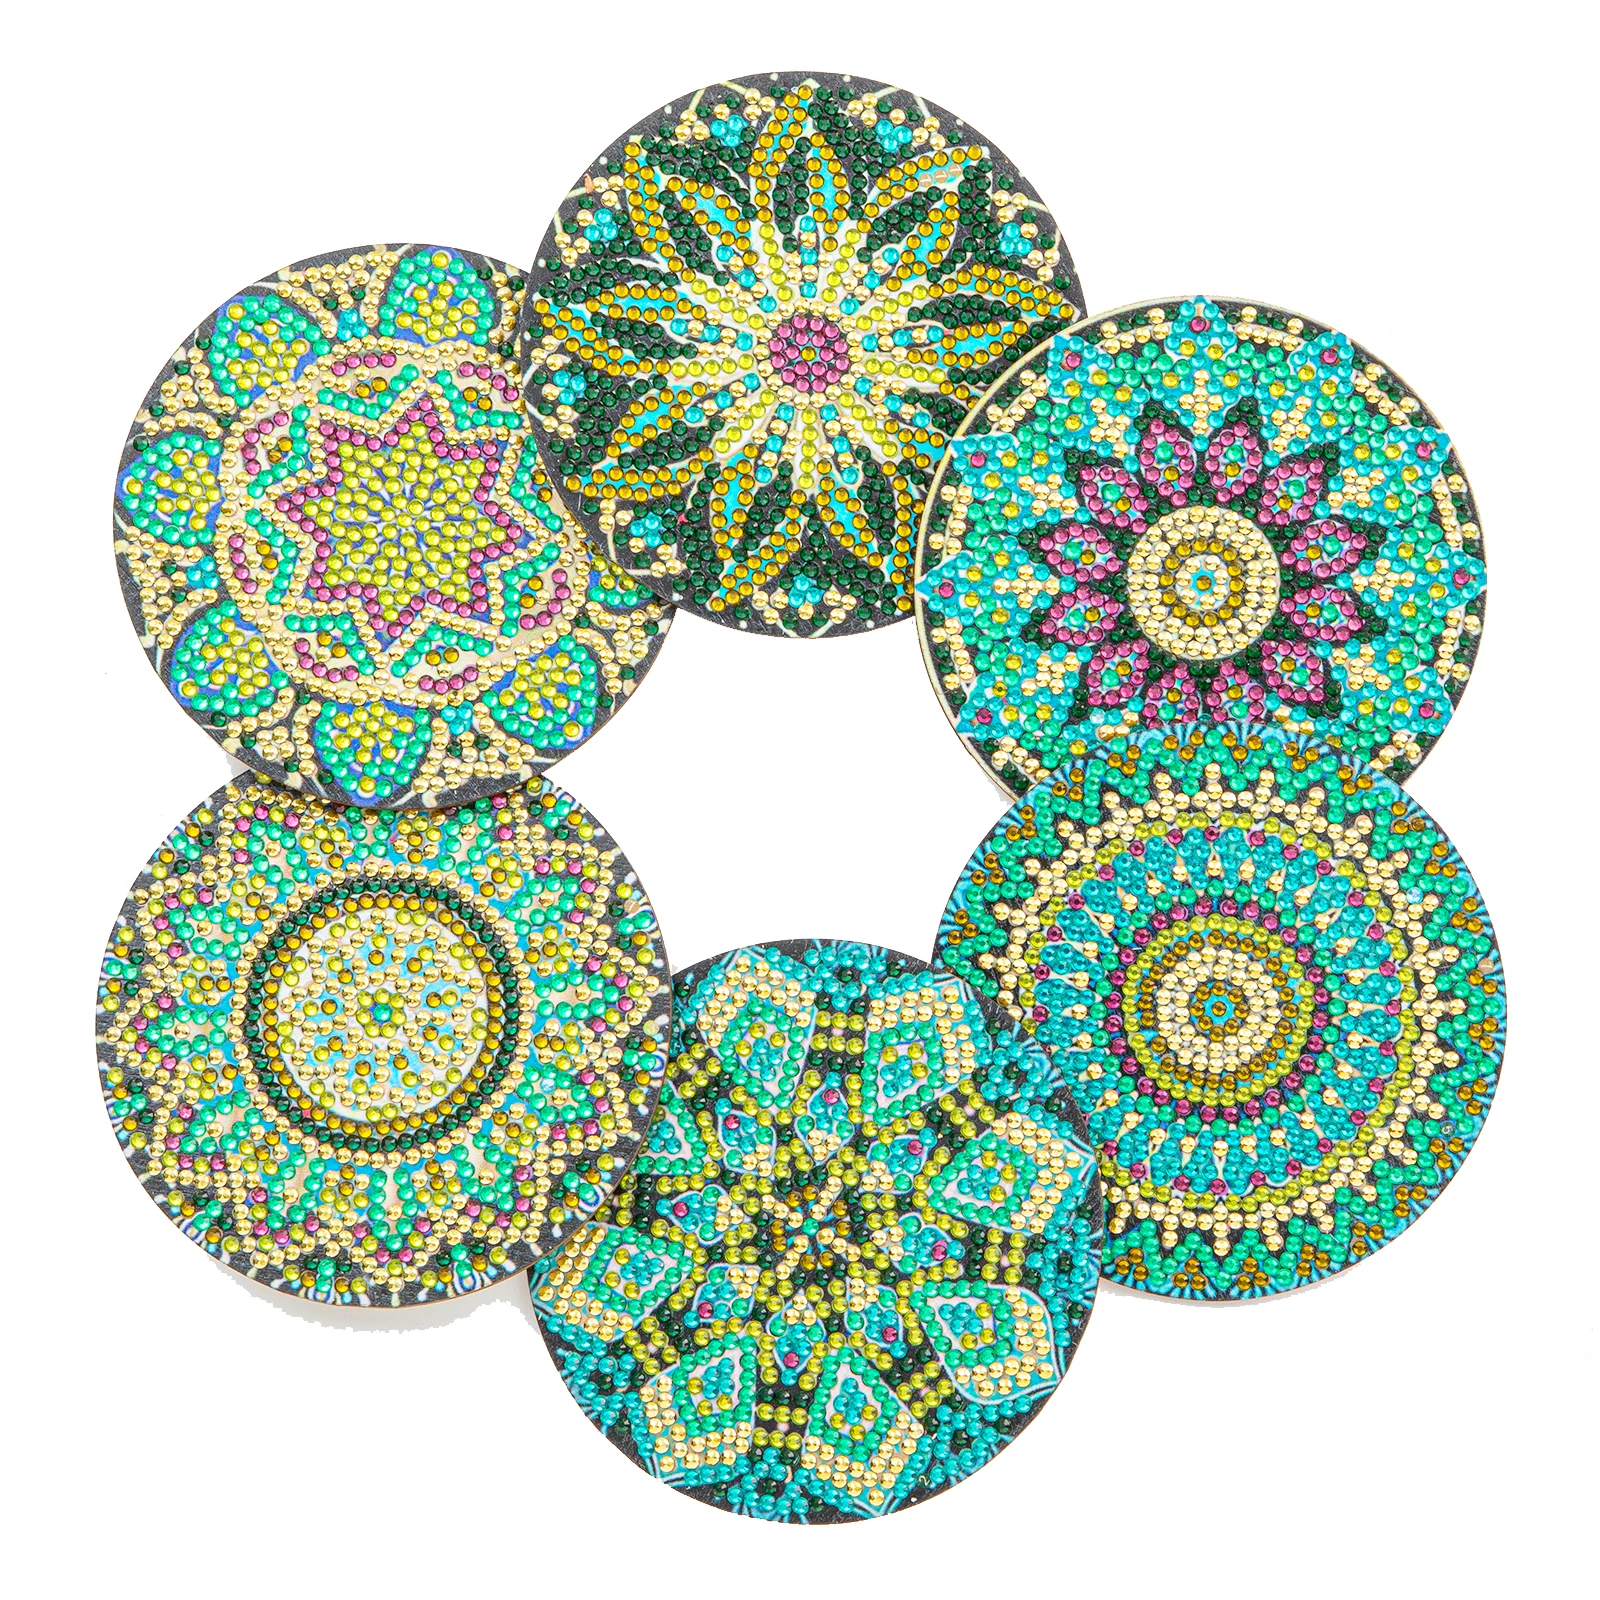 GATYZTORY 8pc/sets Diamond Painting Coasters Kits with Holder Mandala Diamond  Art Kits For Beginners Adults Kids Home Decors - AliExpress